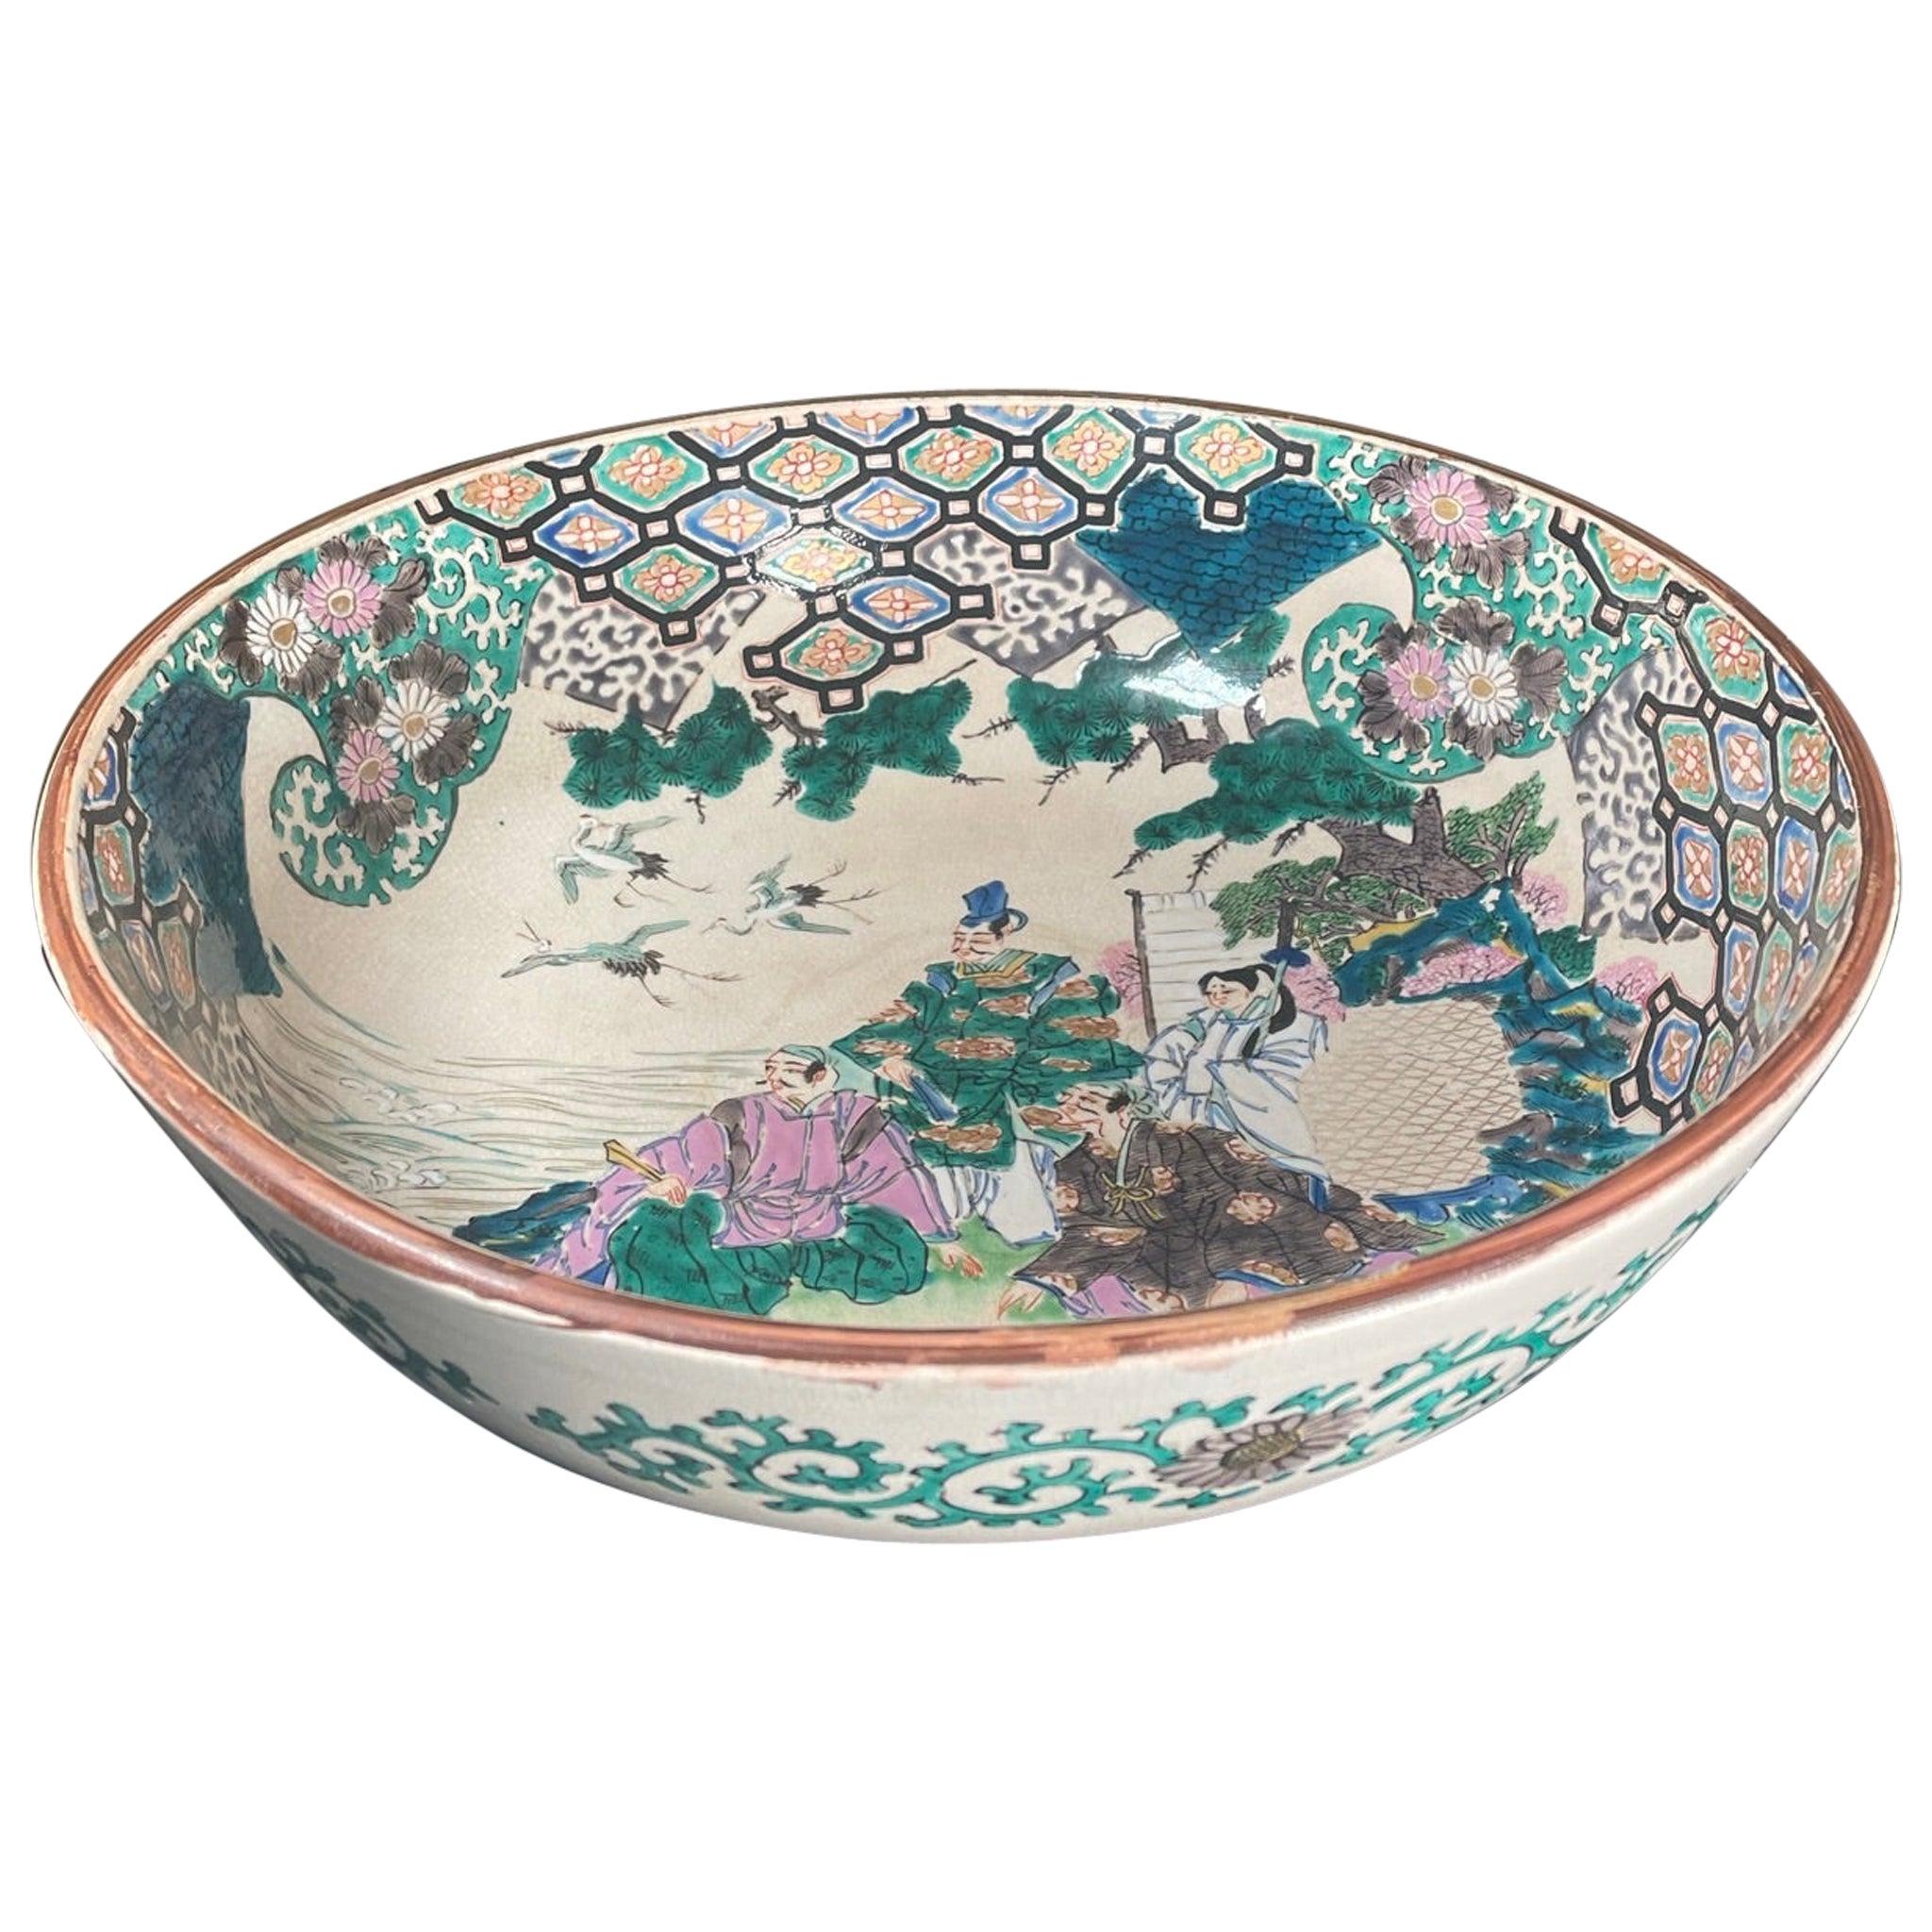 Grand bol de jardin japonais ancien peint à la main Kutani de 12 pouces, couleurs brillantes